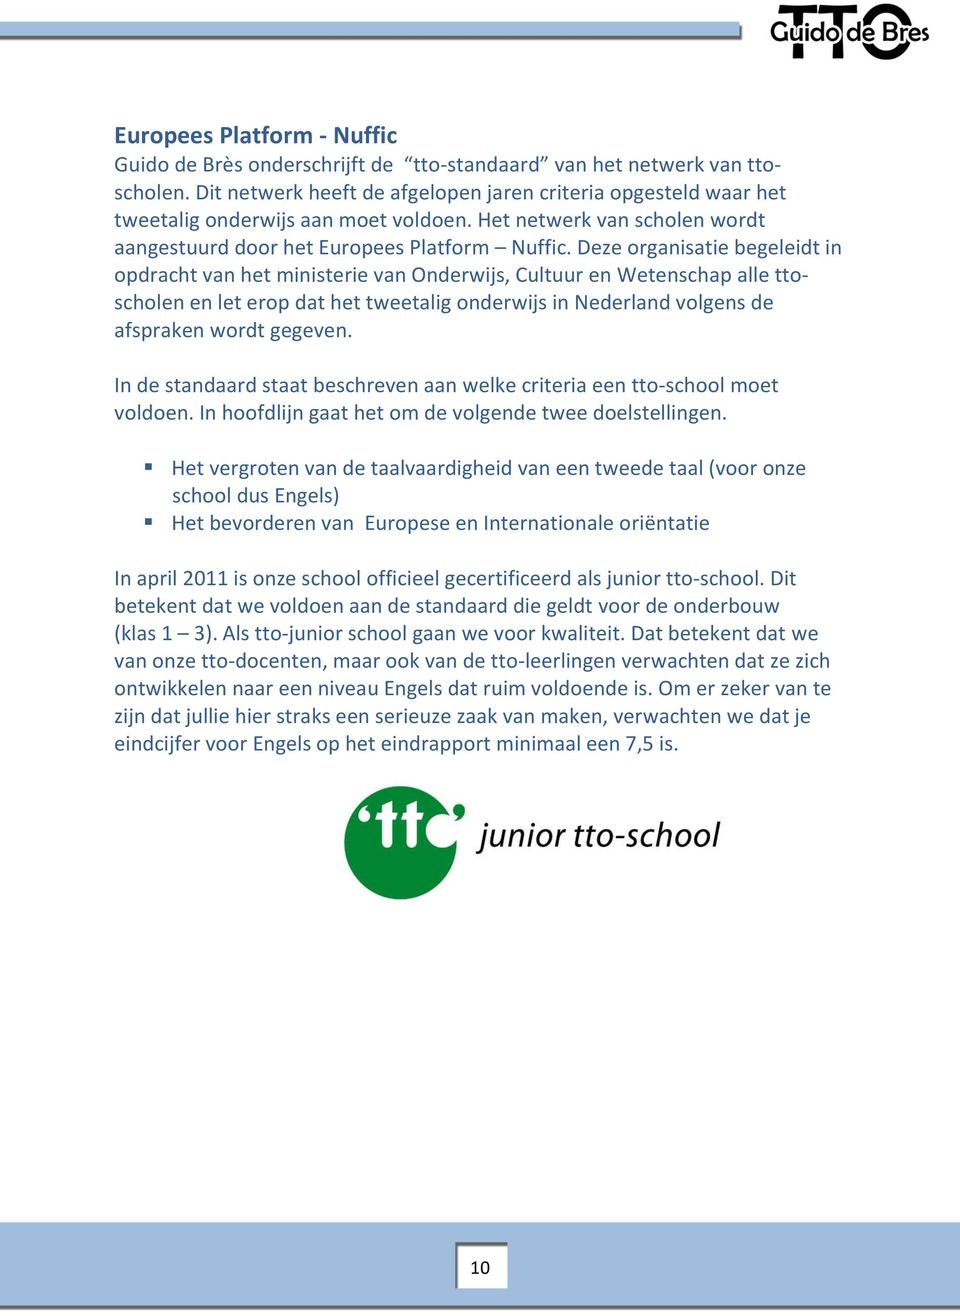 Deze organisatie begeleidt in opdracht van het ministerie van Onderwijs, Cultuur en Wetenschap alle ttoscholen en let erop dat het tweetalig onderwijs in Nederland volgens de afspraken wordt gegeven.